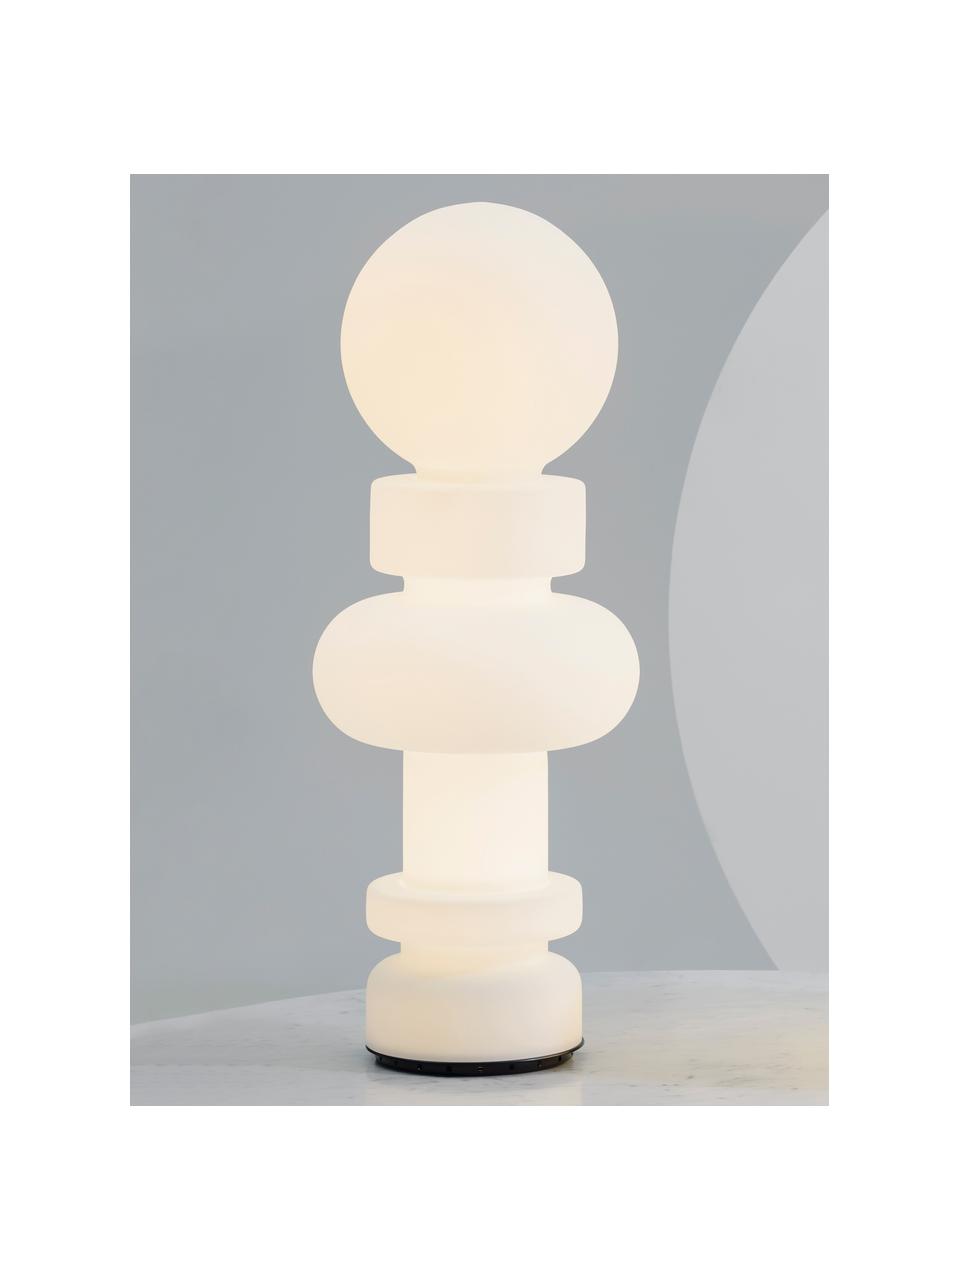 Kleine LED-Stehlampe Re, handgefertigt, Lampenschirm: Glas, Weiss, Ø 34 x H 89 cm